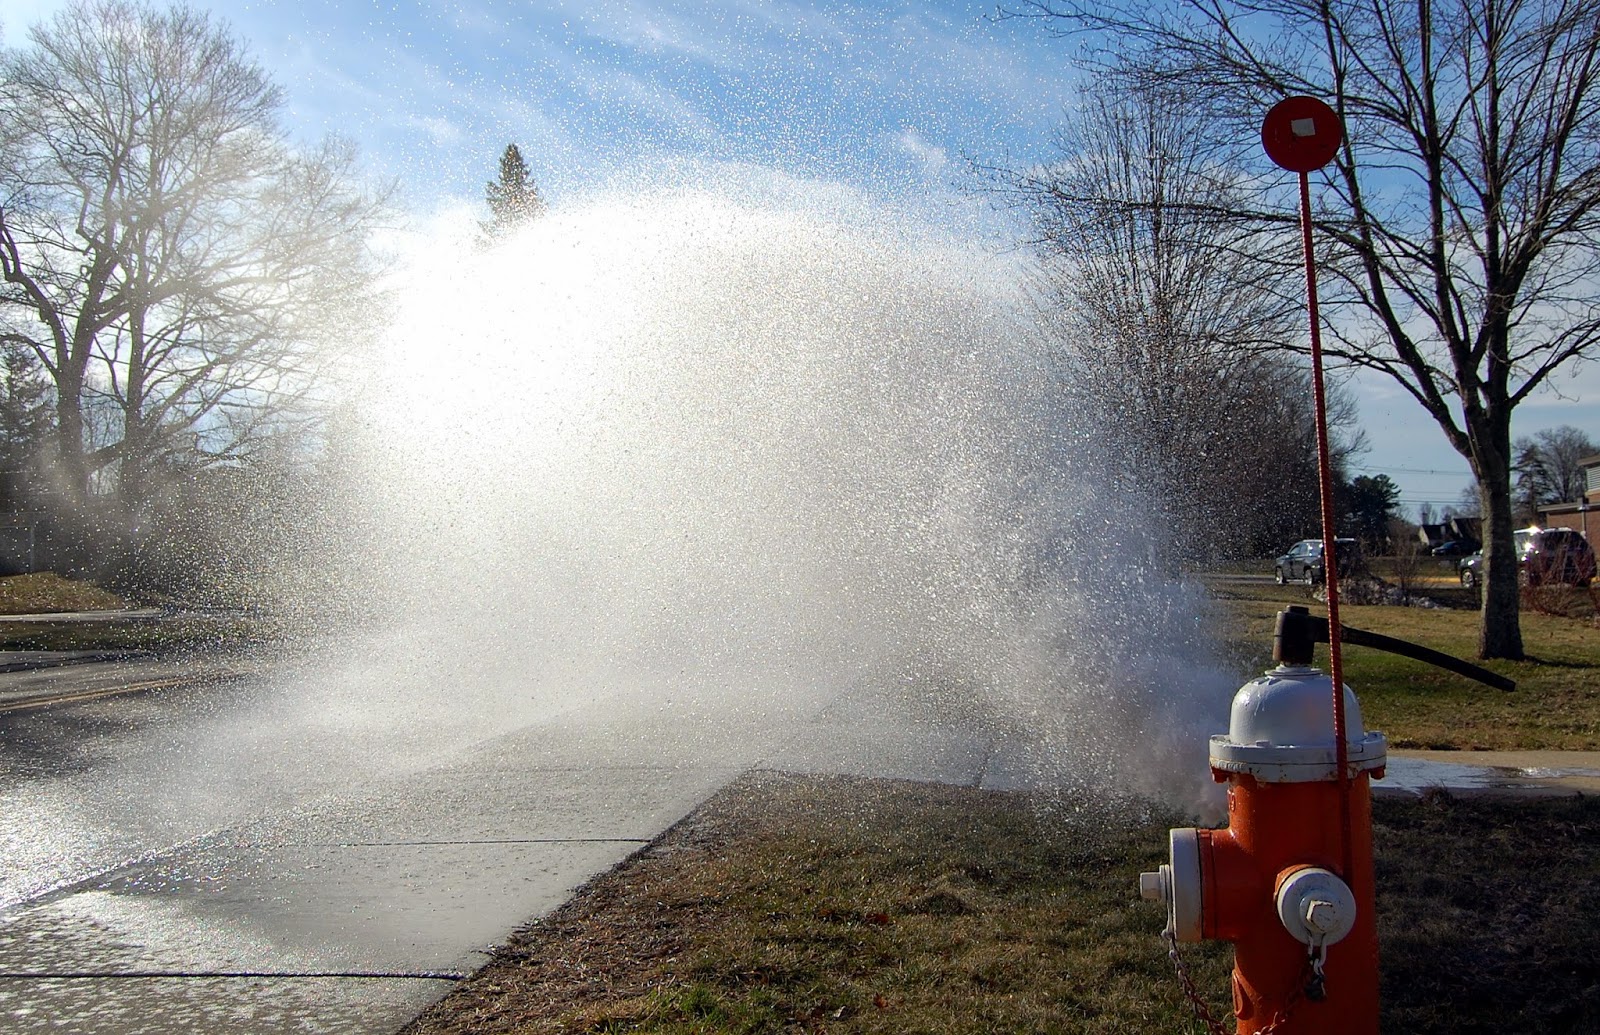 DPW hydrant flushing